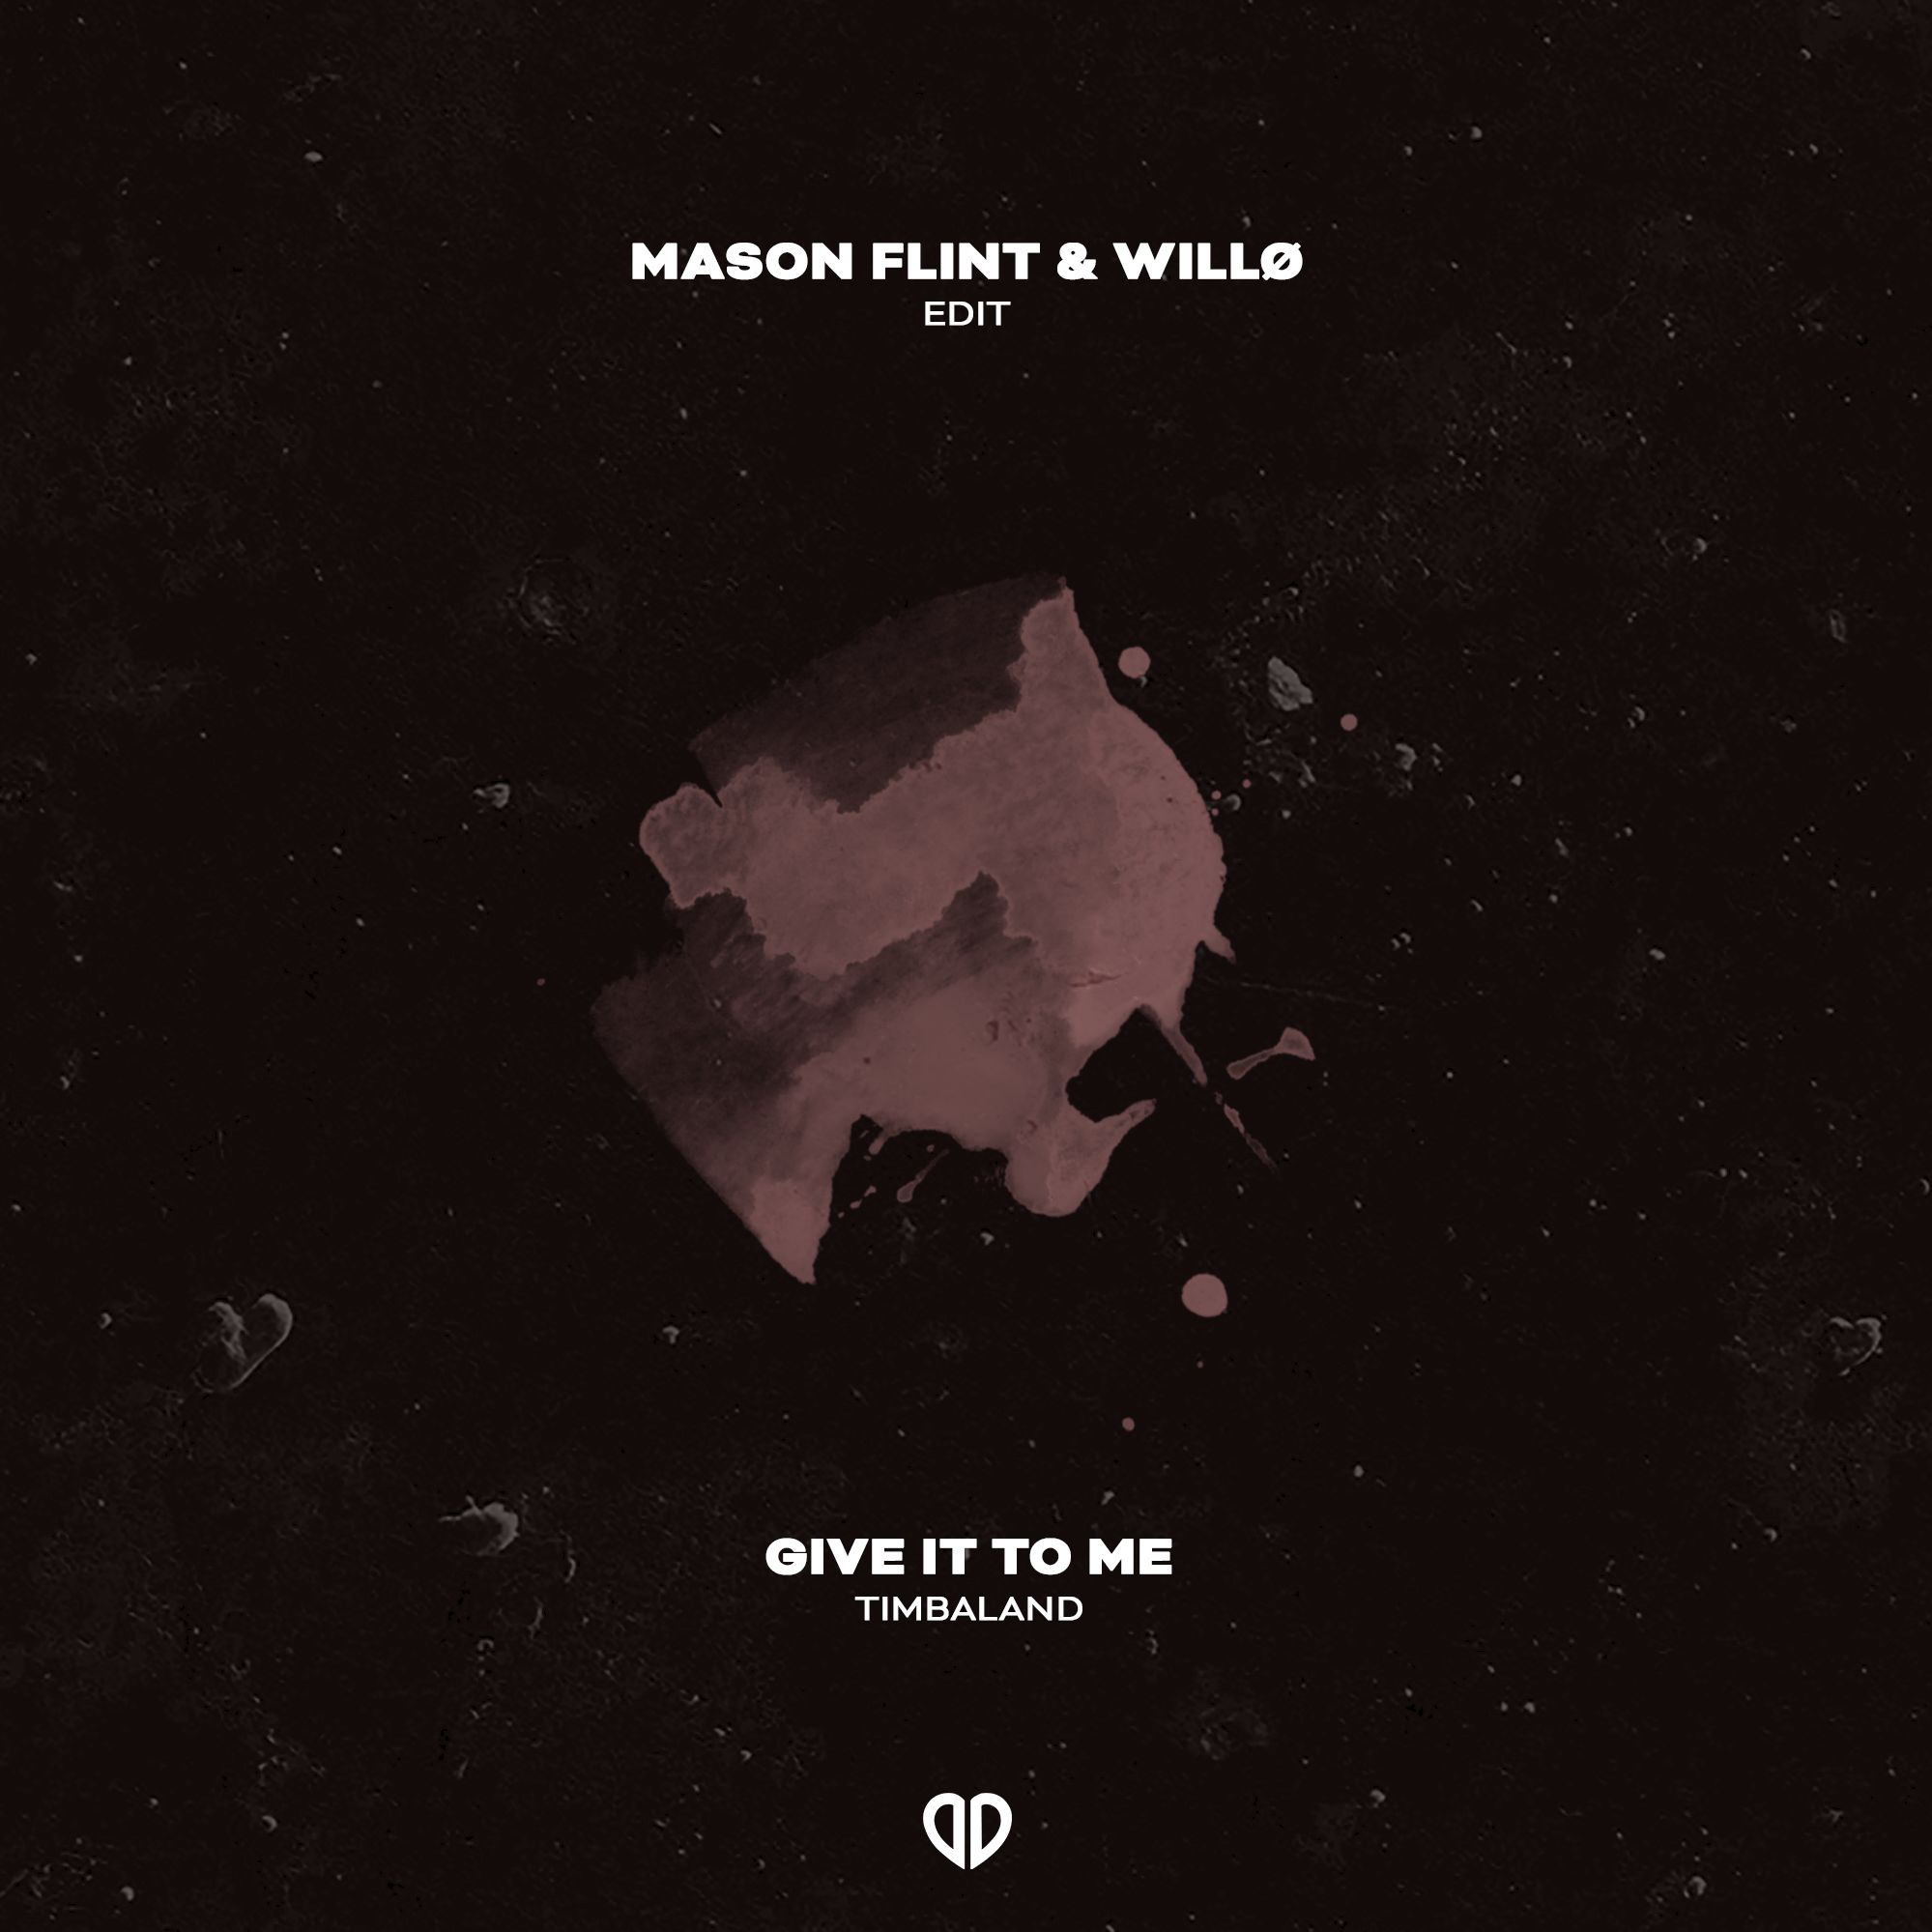 Κατεβάστε Timbaland - Give It To Me (Mason Flint & Willo Edit) [DropUnited Exclusive]